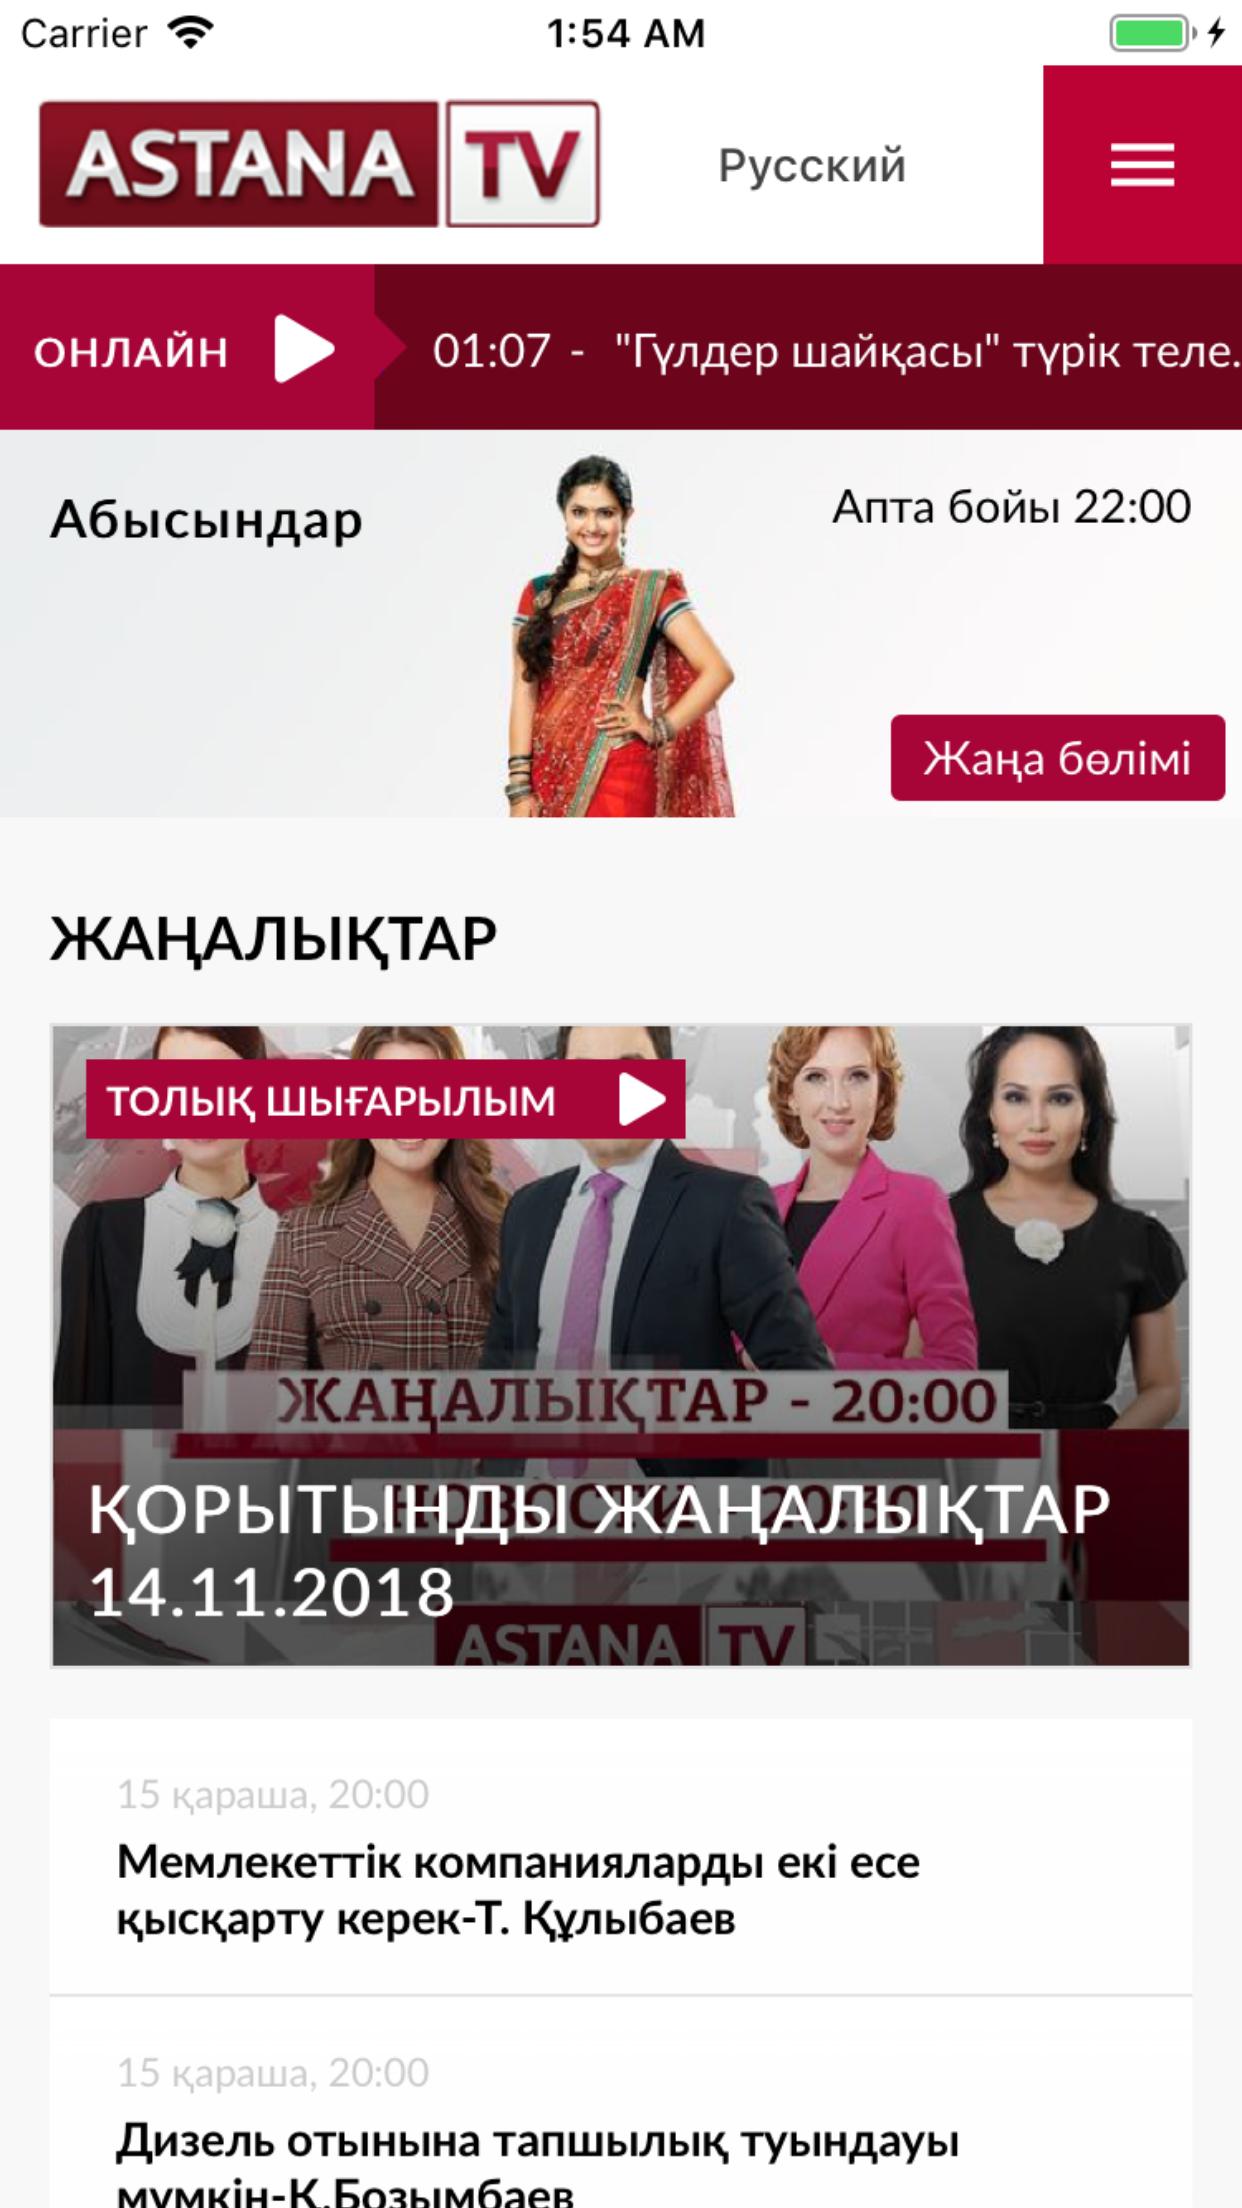 Программа телеканала астана. Телеканал Астана / Astana TV. Астана ТВ 2012. Астана ТВ 2013.